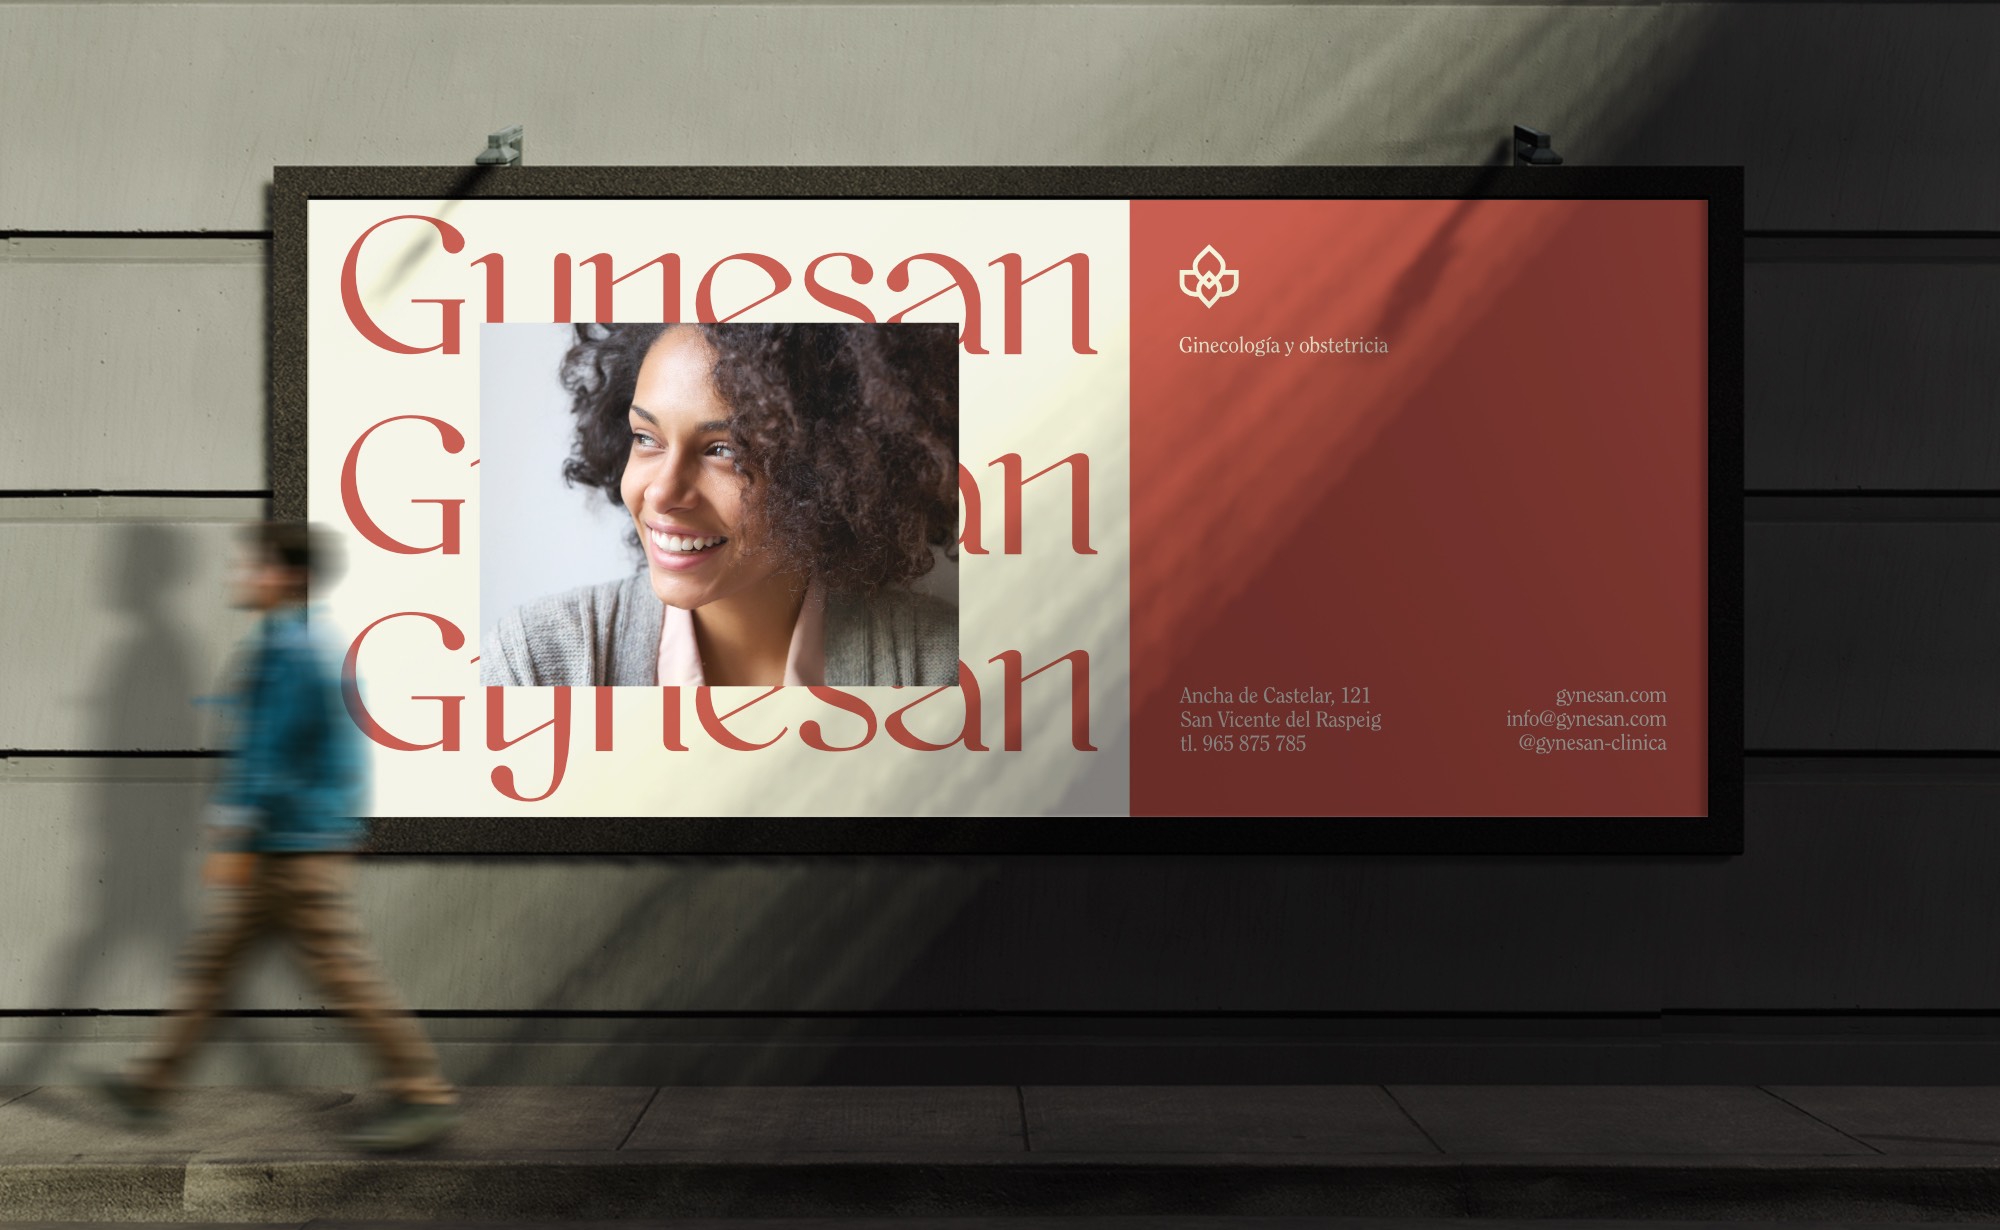 Diseño y desarrollo de identidad visual corporativa para Gynesan. Billboard